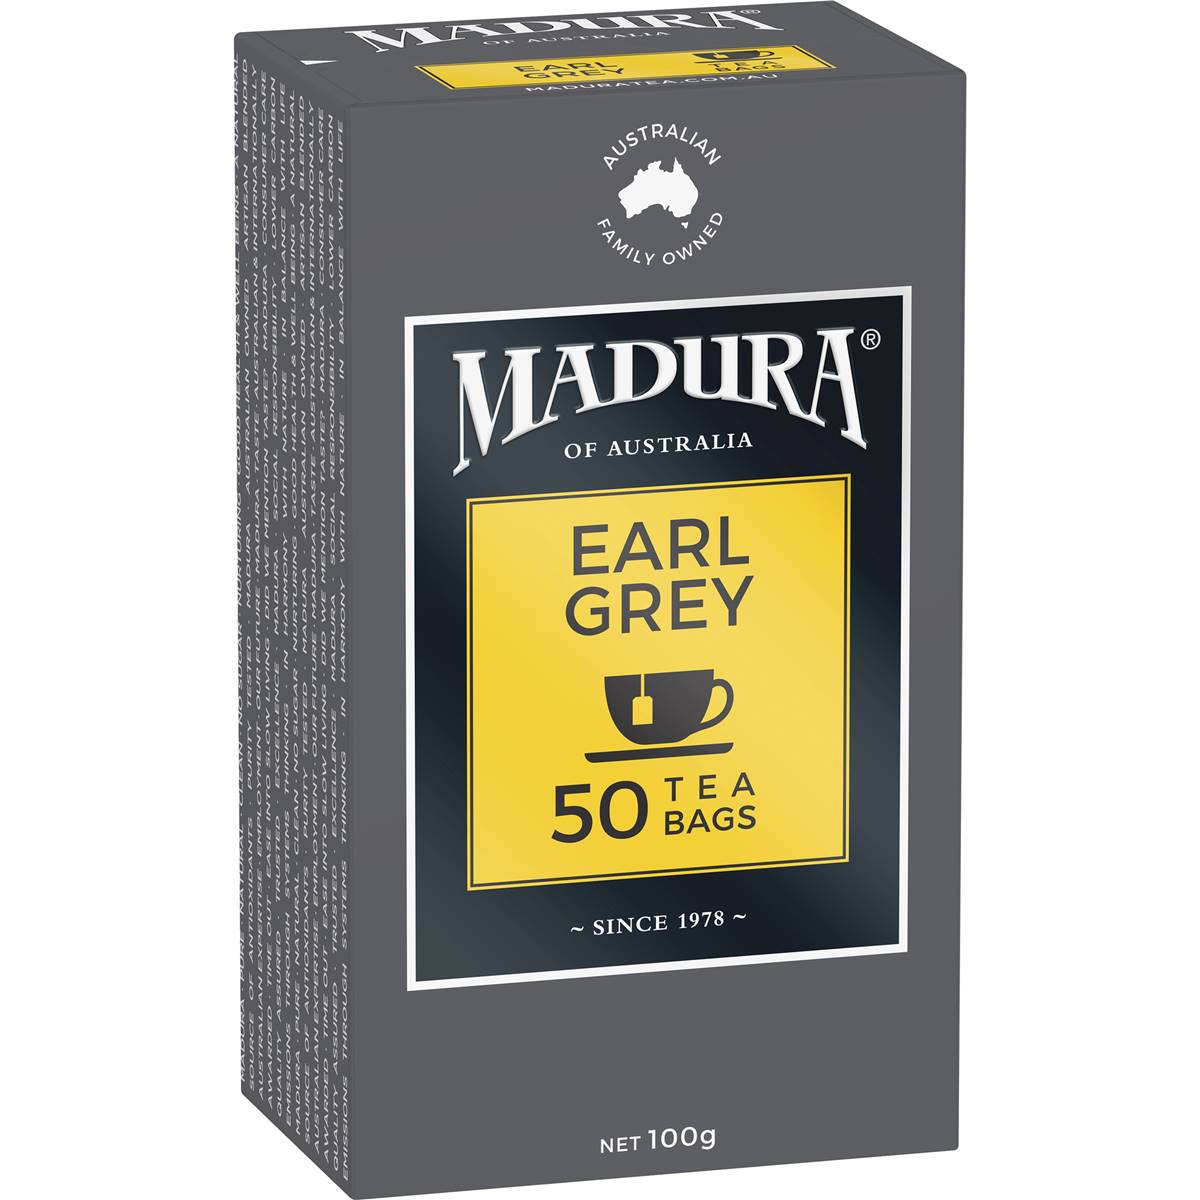 Calories in Madura Earl Grey Tea Bags